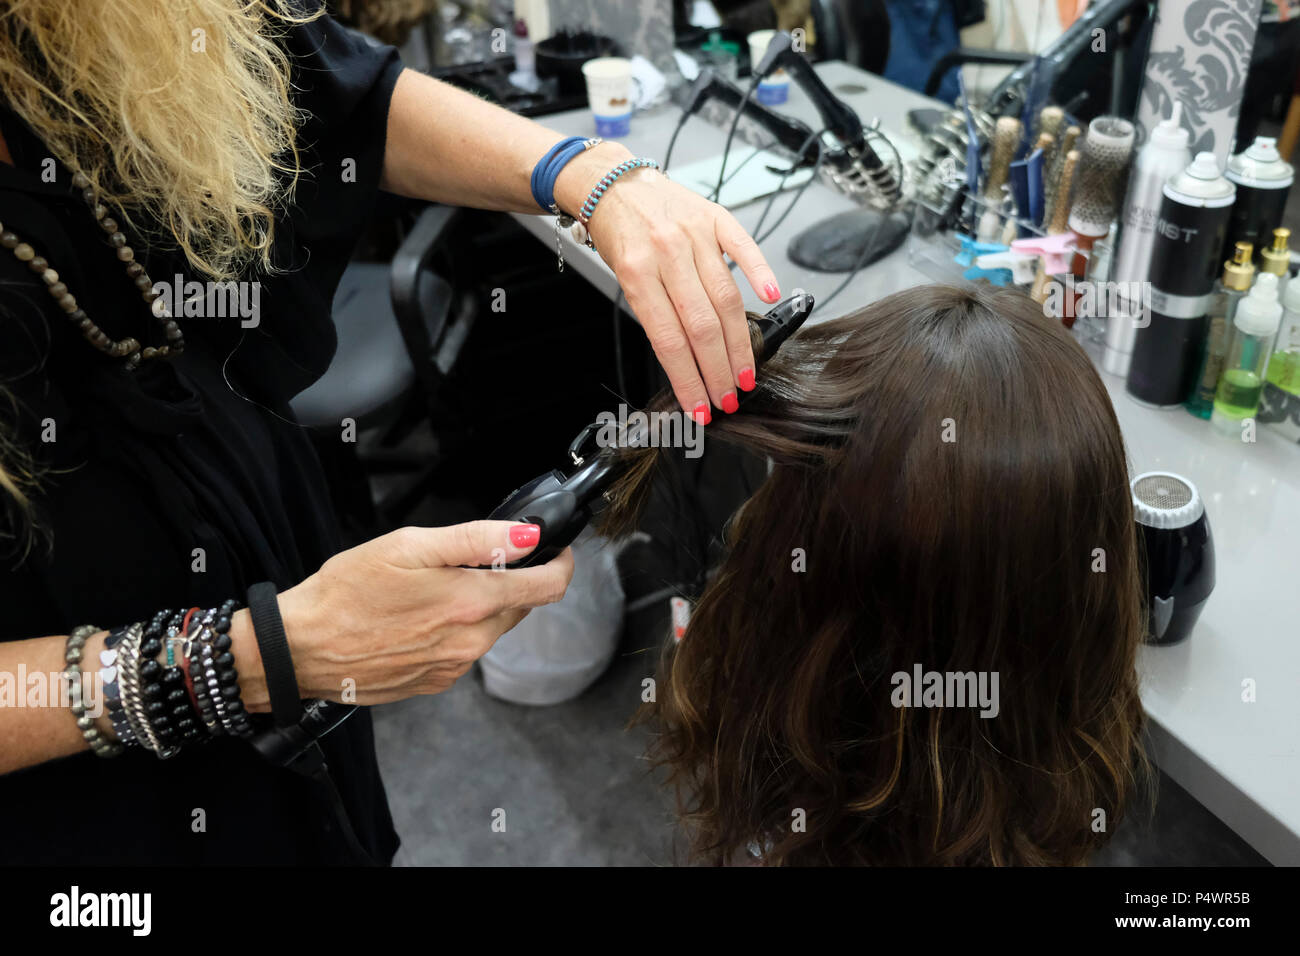 Bracha Keynan, produttore di parrucche e stilista haredi lavora su una parrucca per capelli umana nel suo negozio nella città di Bnei Brak o bene Beraq un centro del giudaismo Haredi in Israele Foto Stock